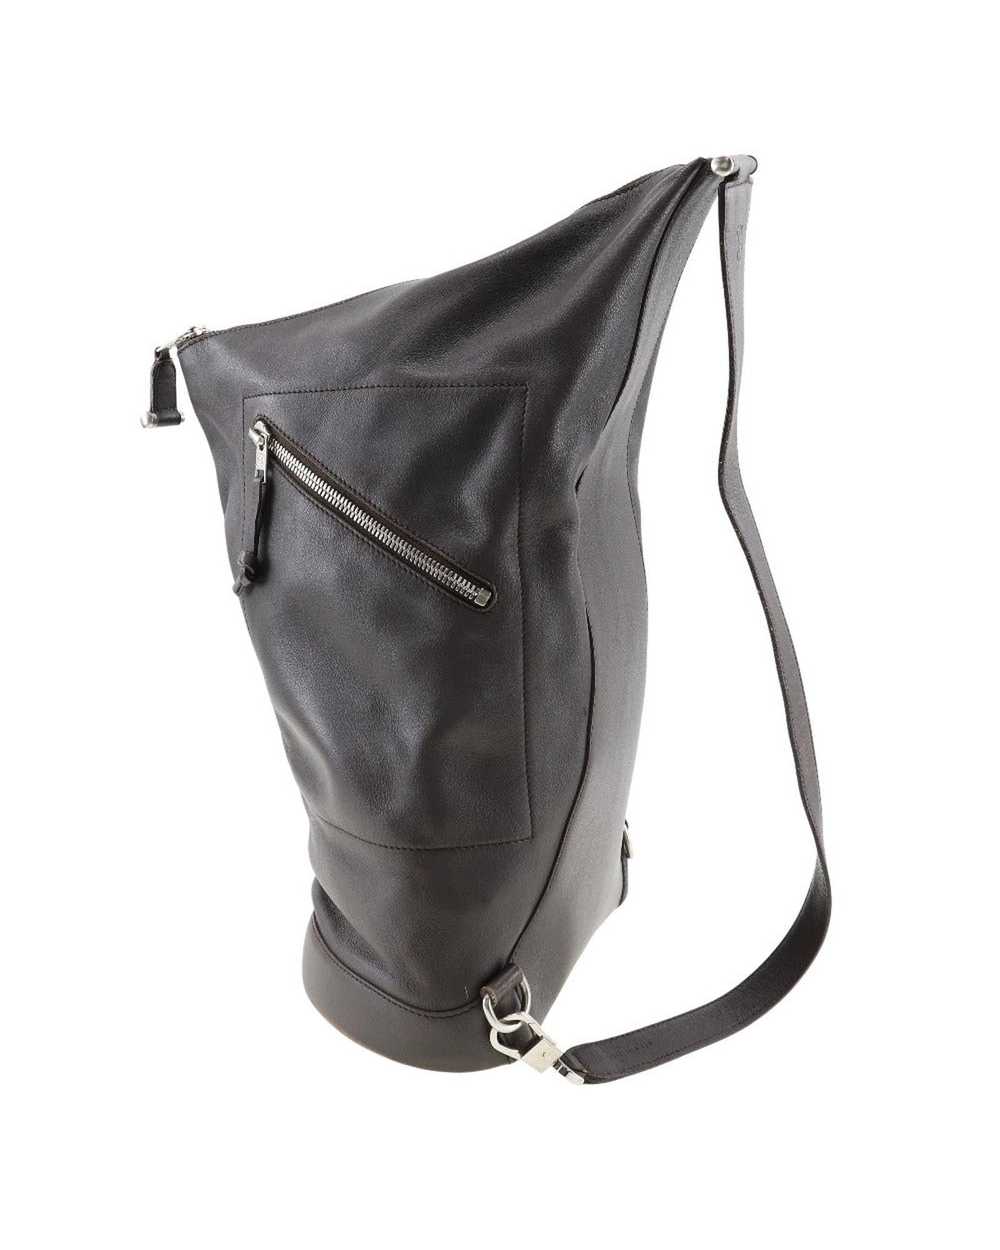 Loewe Brown Leather One-Shoulder Bag - image 2